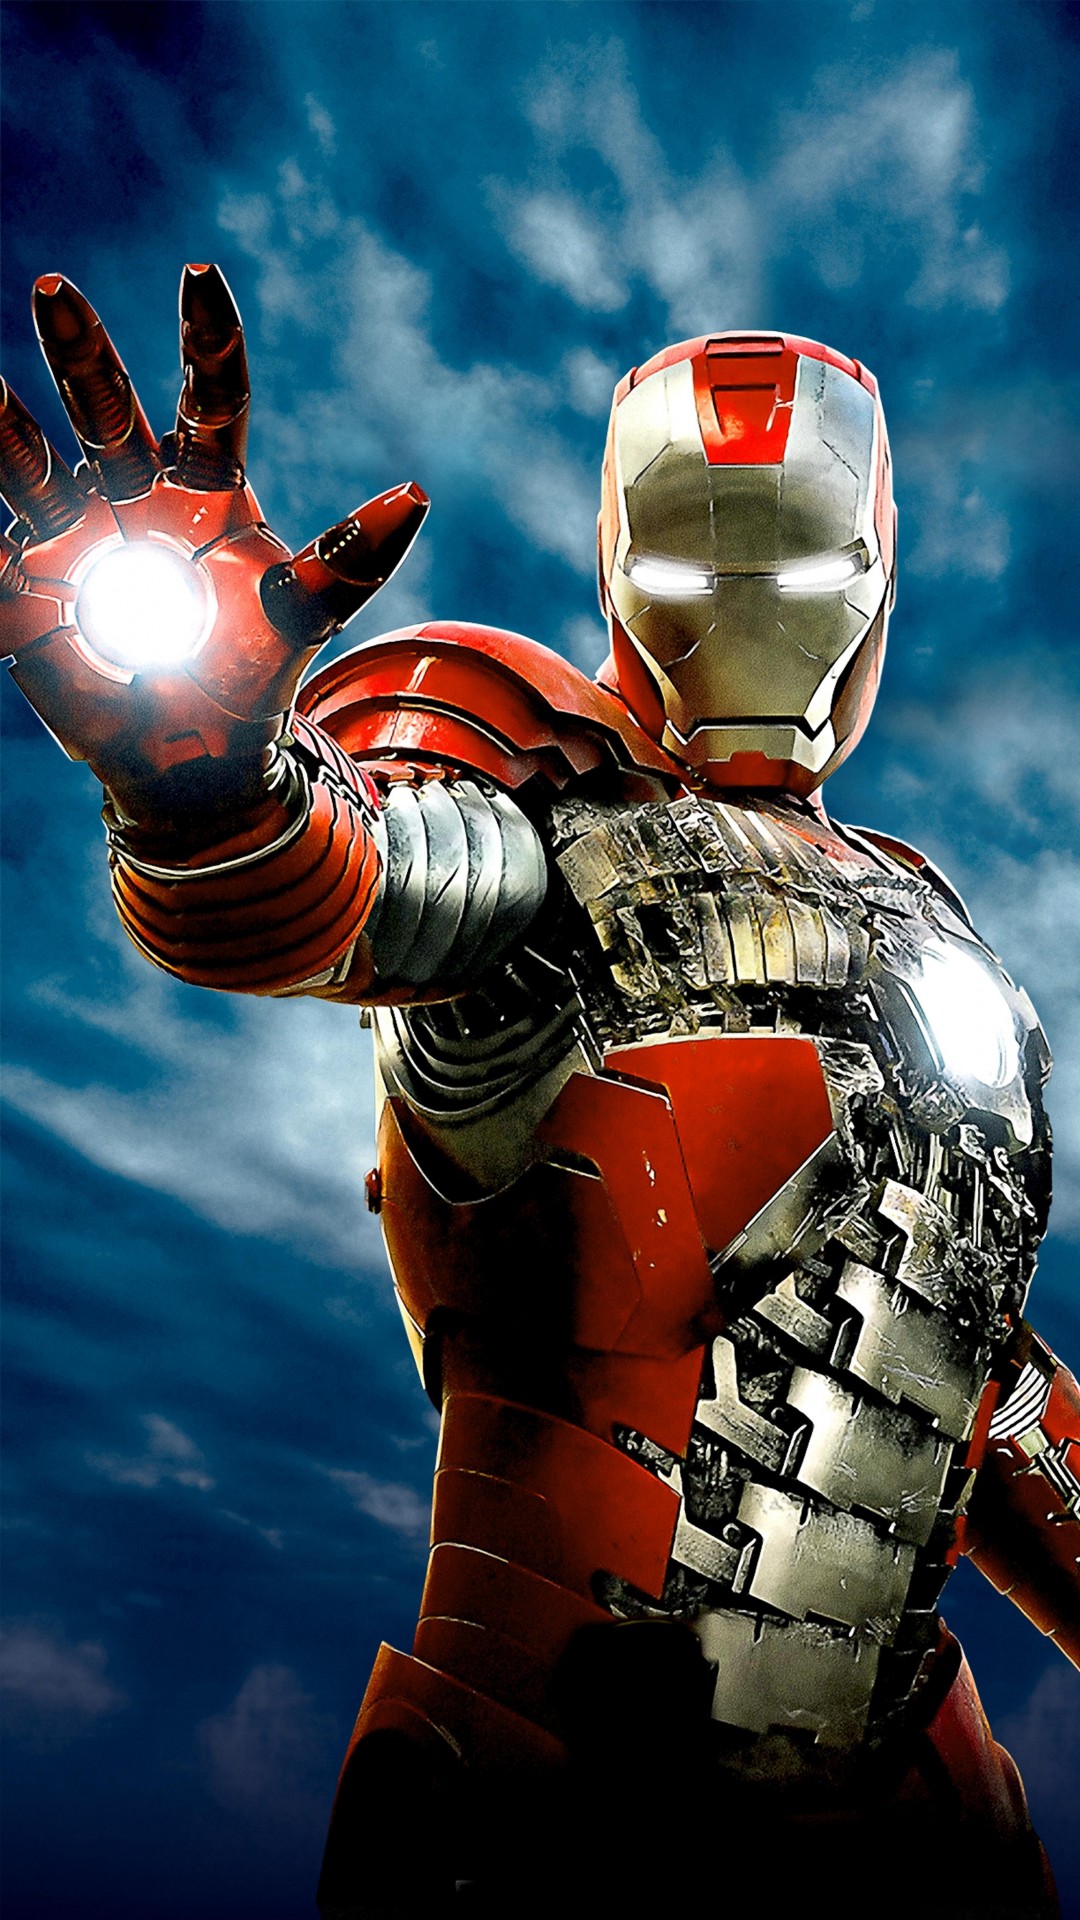 Iron Man: Chào mừng đến với thế giới kỳ diệu của Iron Man - một siêu anh hùng đầy sức mạnh và tài năng. Hãy nhấn vào ảnh liên quan để được chiêm ngưỡng hình ảnh đẹp mắt của Iron Man và tham gia vào cuộc phiêu lưu hấp dẫn này!